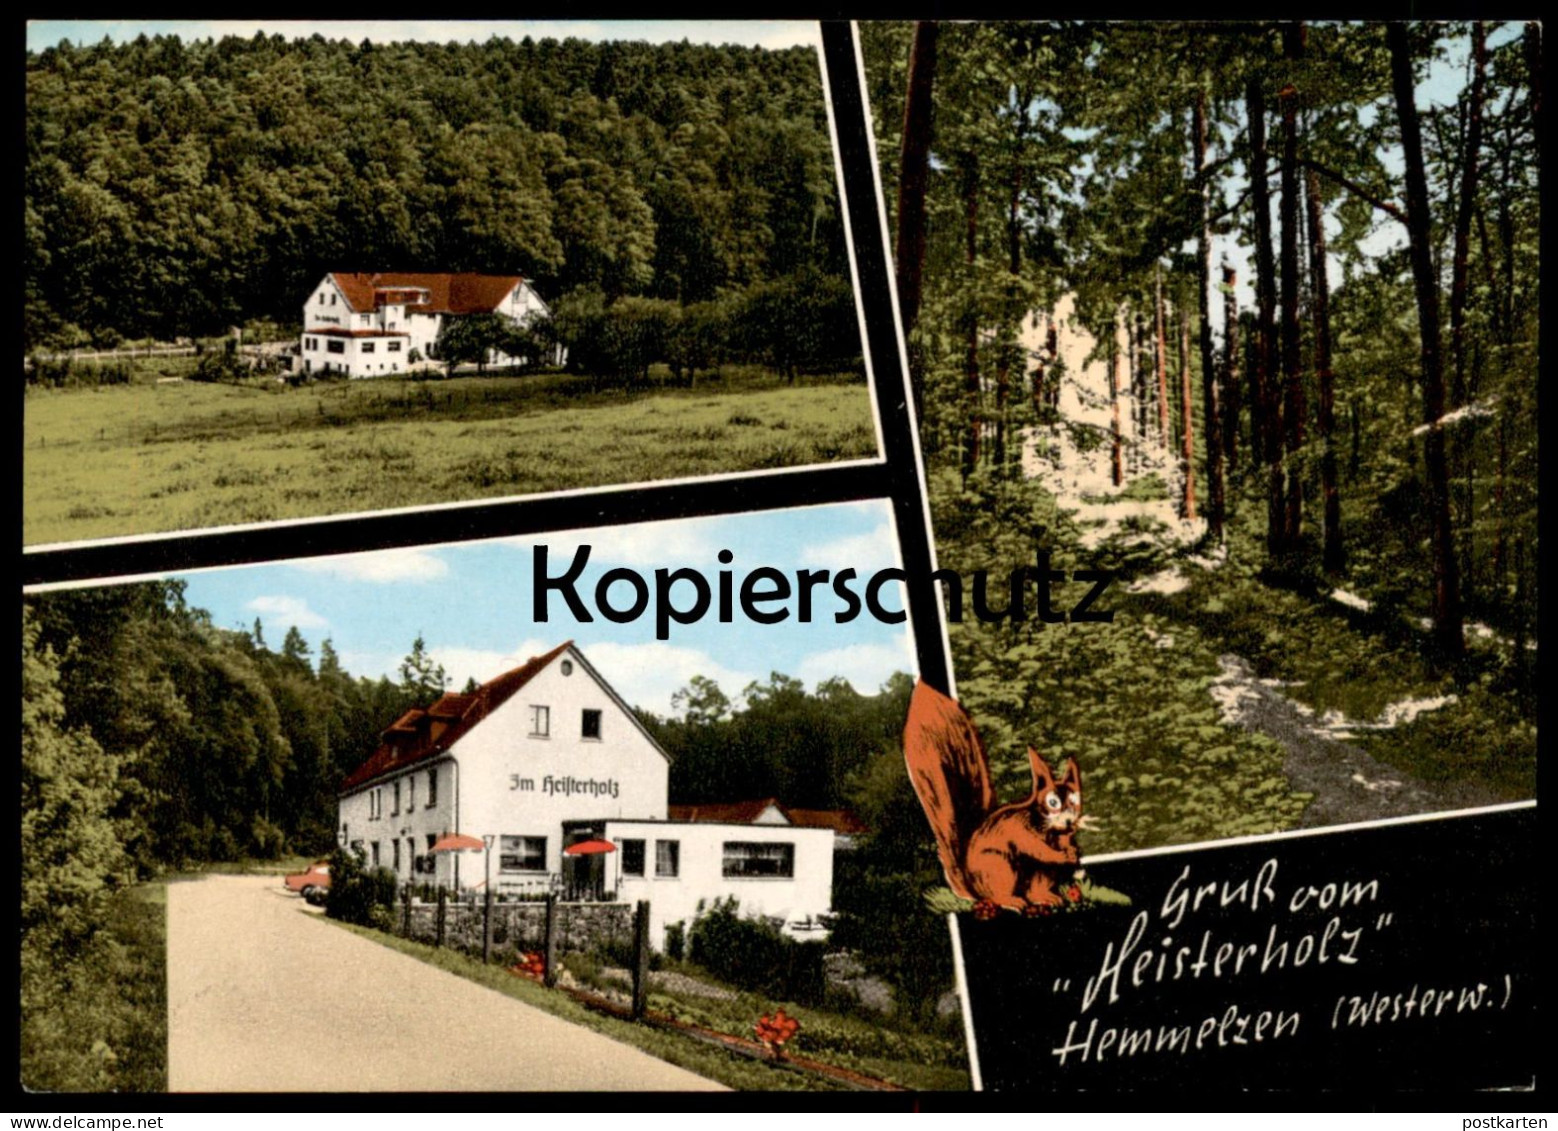 ÄLTERE POSTKARTE GRUSS VOM HEISTERHOLZ HEMMELZEN WESTERWALD EICHHÖRNCHEN ALTENKIRCHEN FLAMMERSFELD Squirrel Postcard AK - Altenkirchen